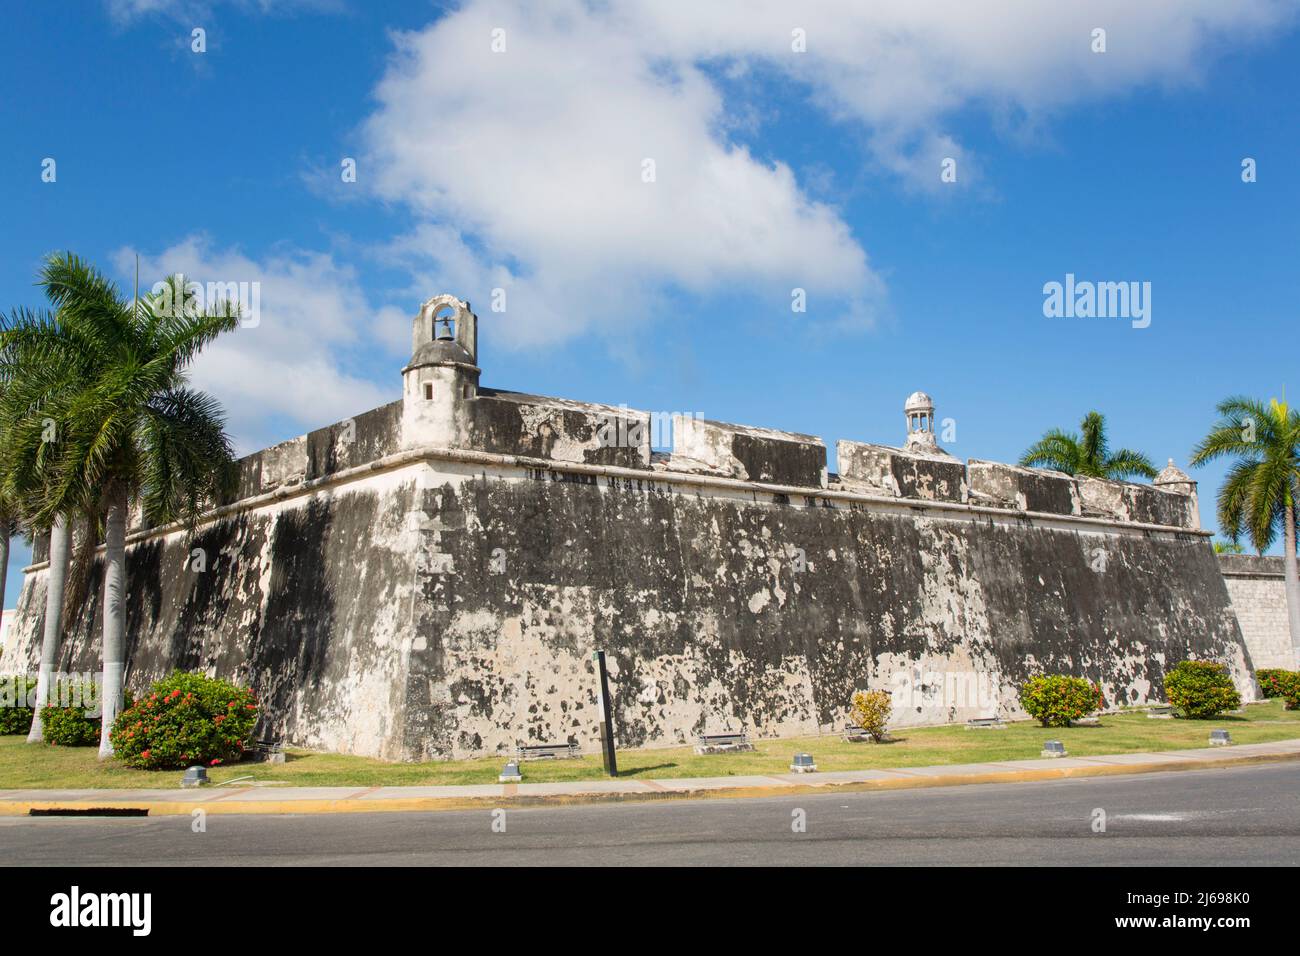 Muralla Colonial fortificada, Casco Antiguo, Patrimonio de la Humanidad de la UNESCO, San Francisco de Campeche, Estado de Campeche, México Foto de stock